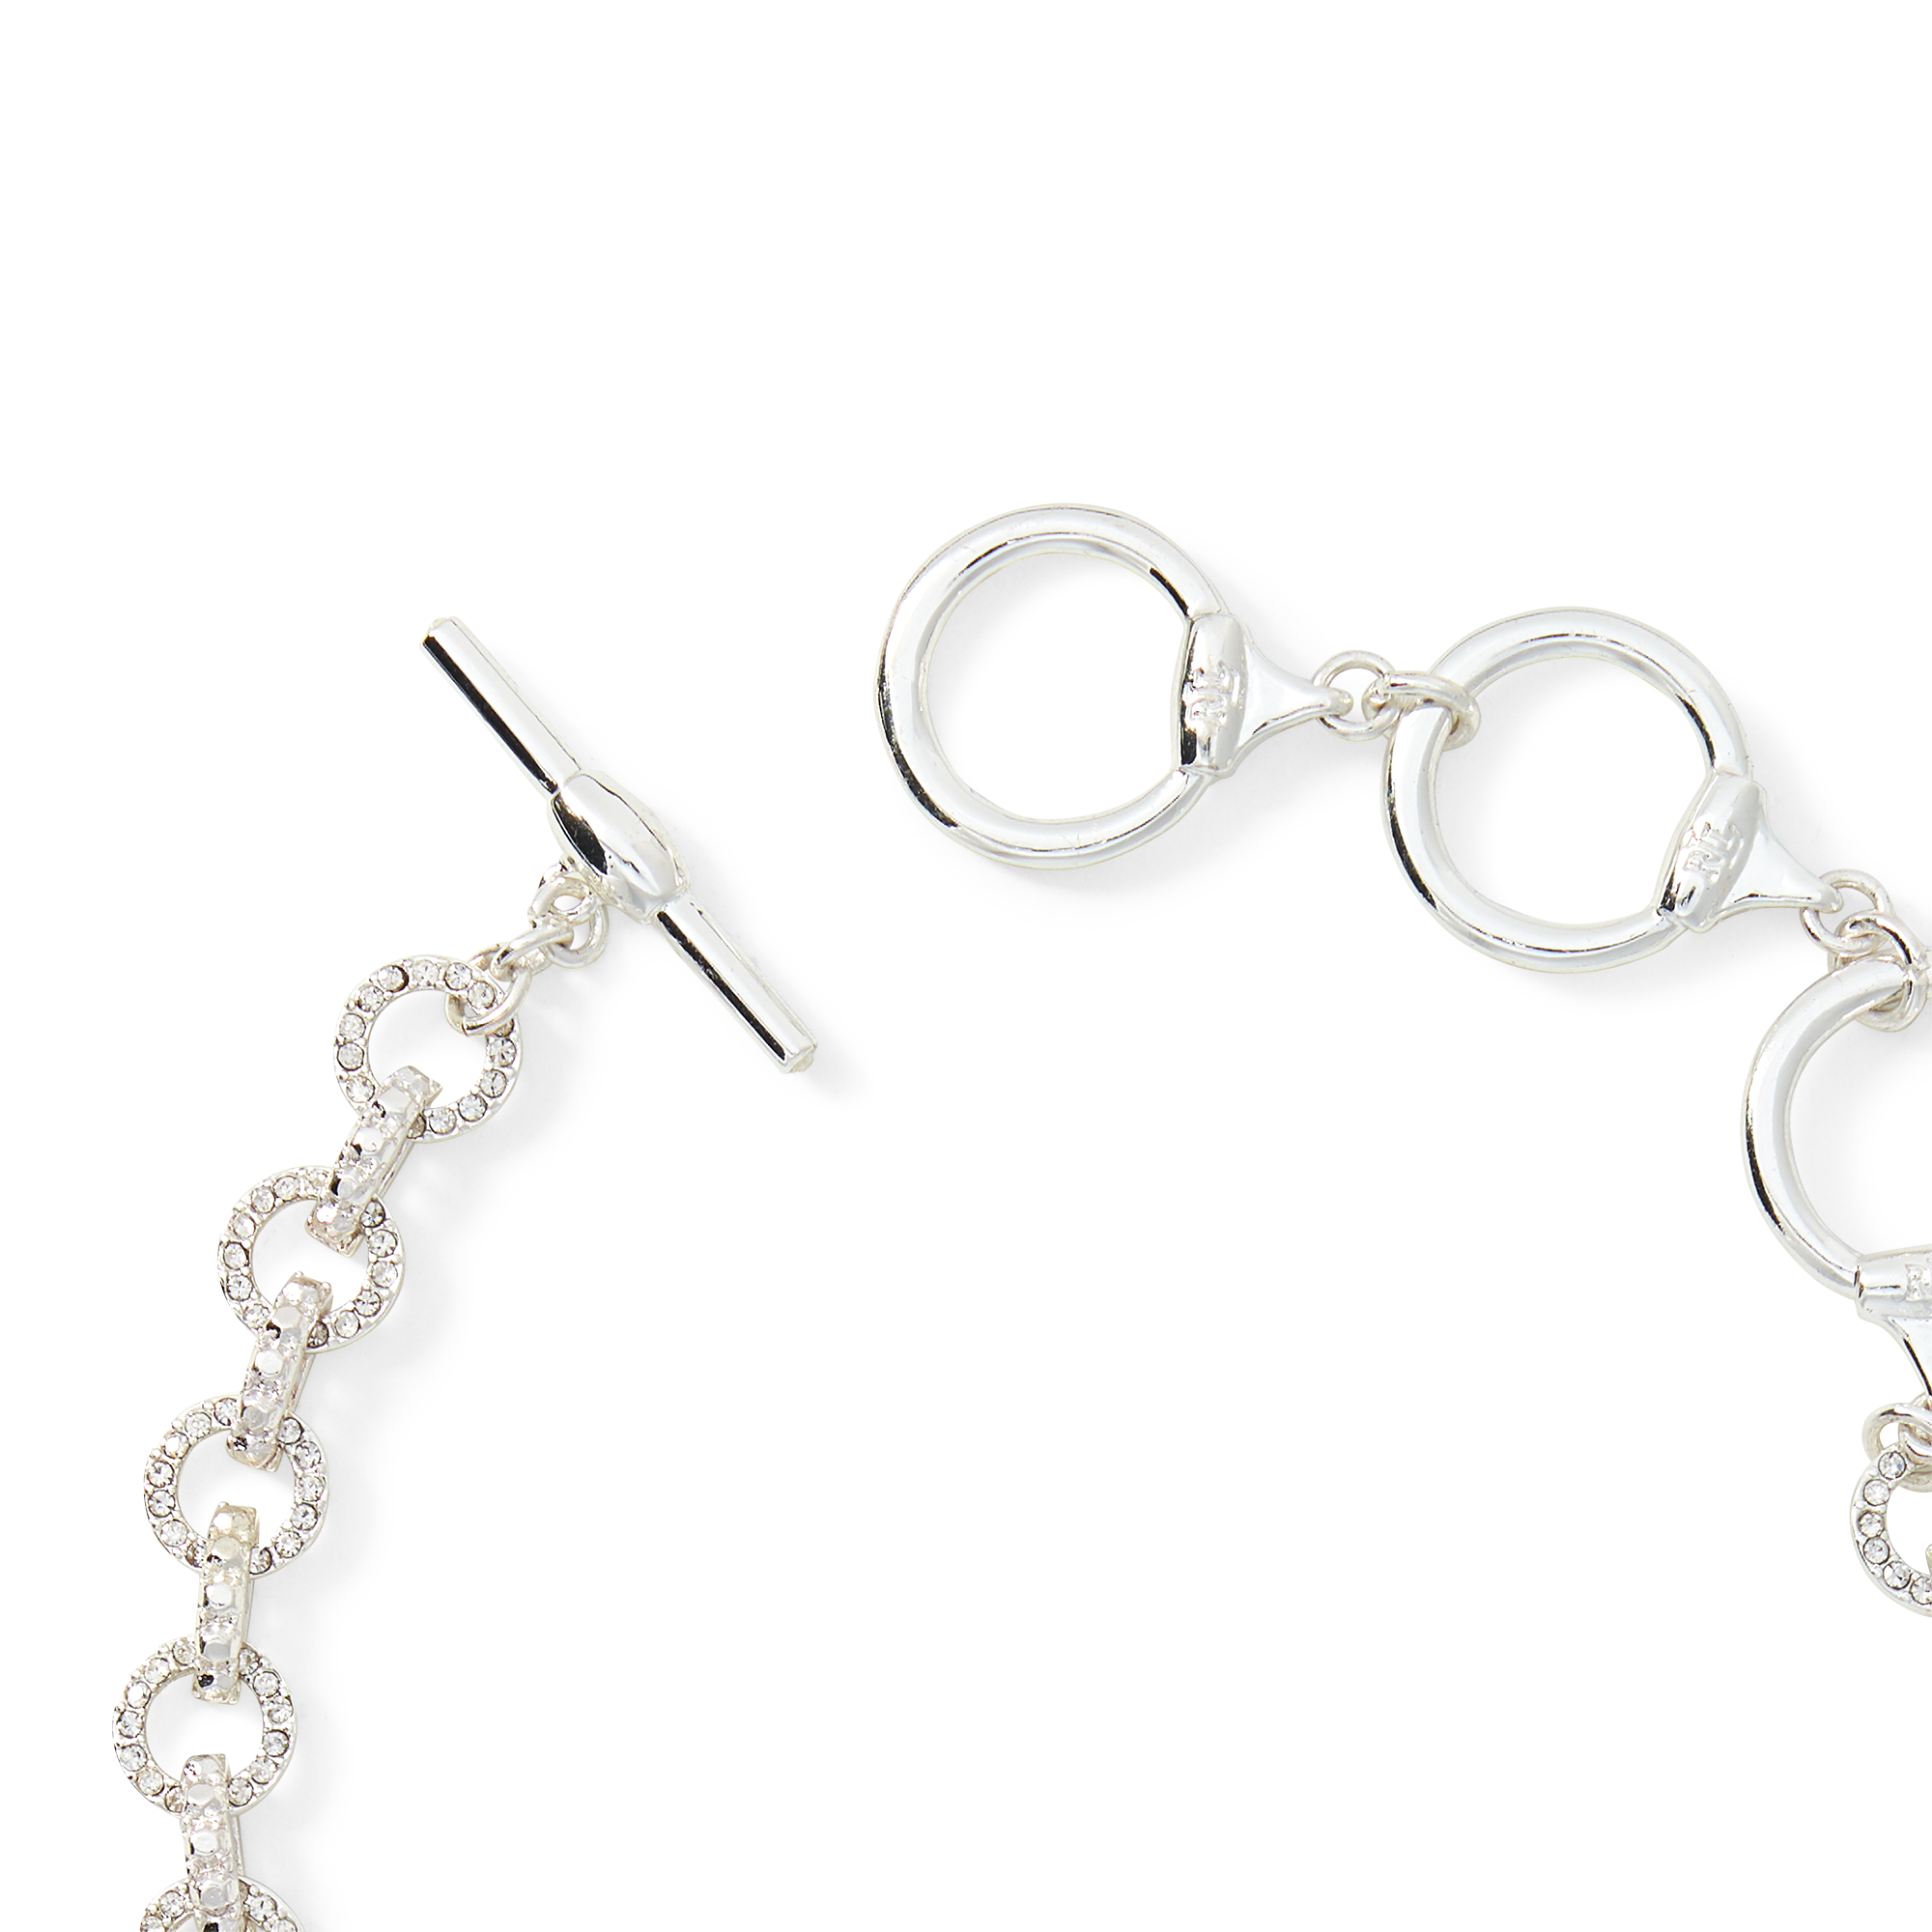 Ralph Lauren Bead Link Collar Necklace. 2